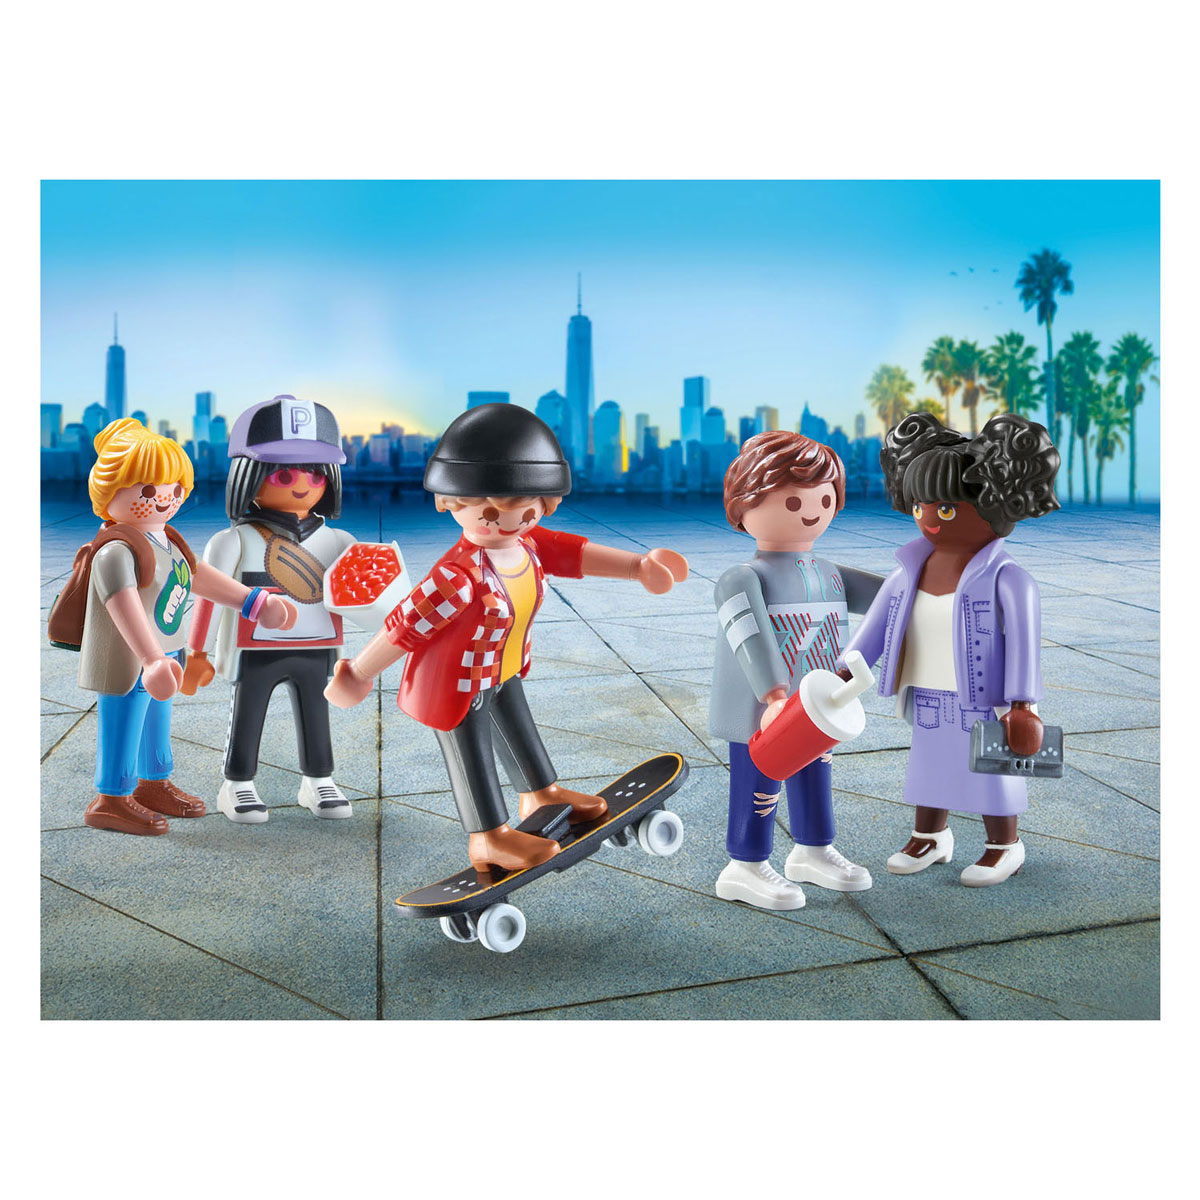 Playmobil City Life Meine Figuren: Mode – 71401